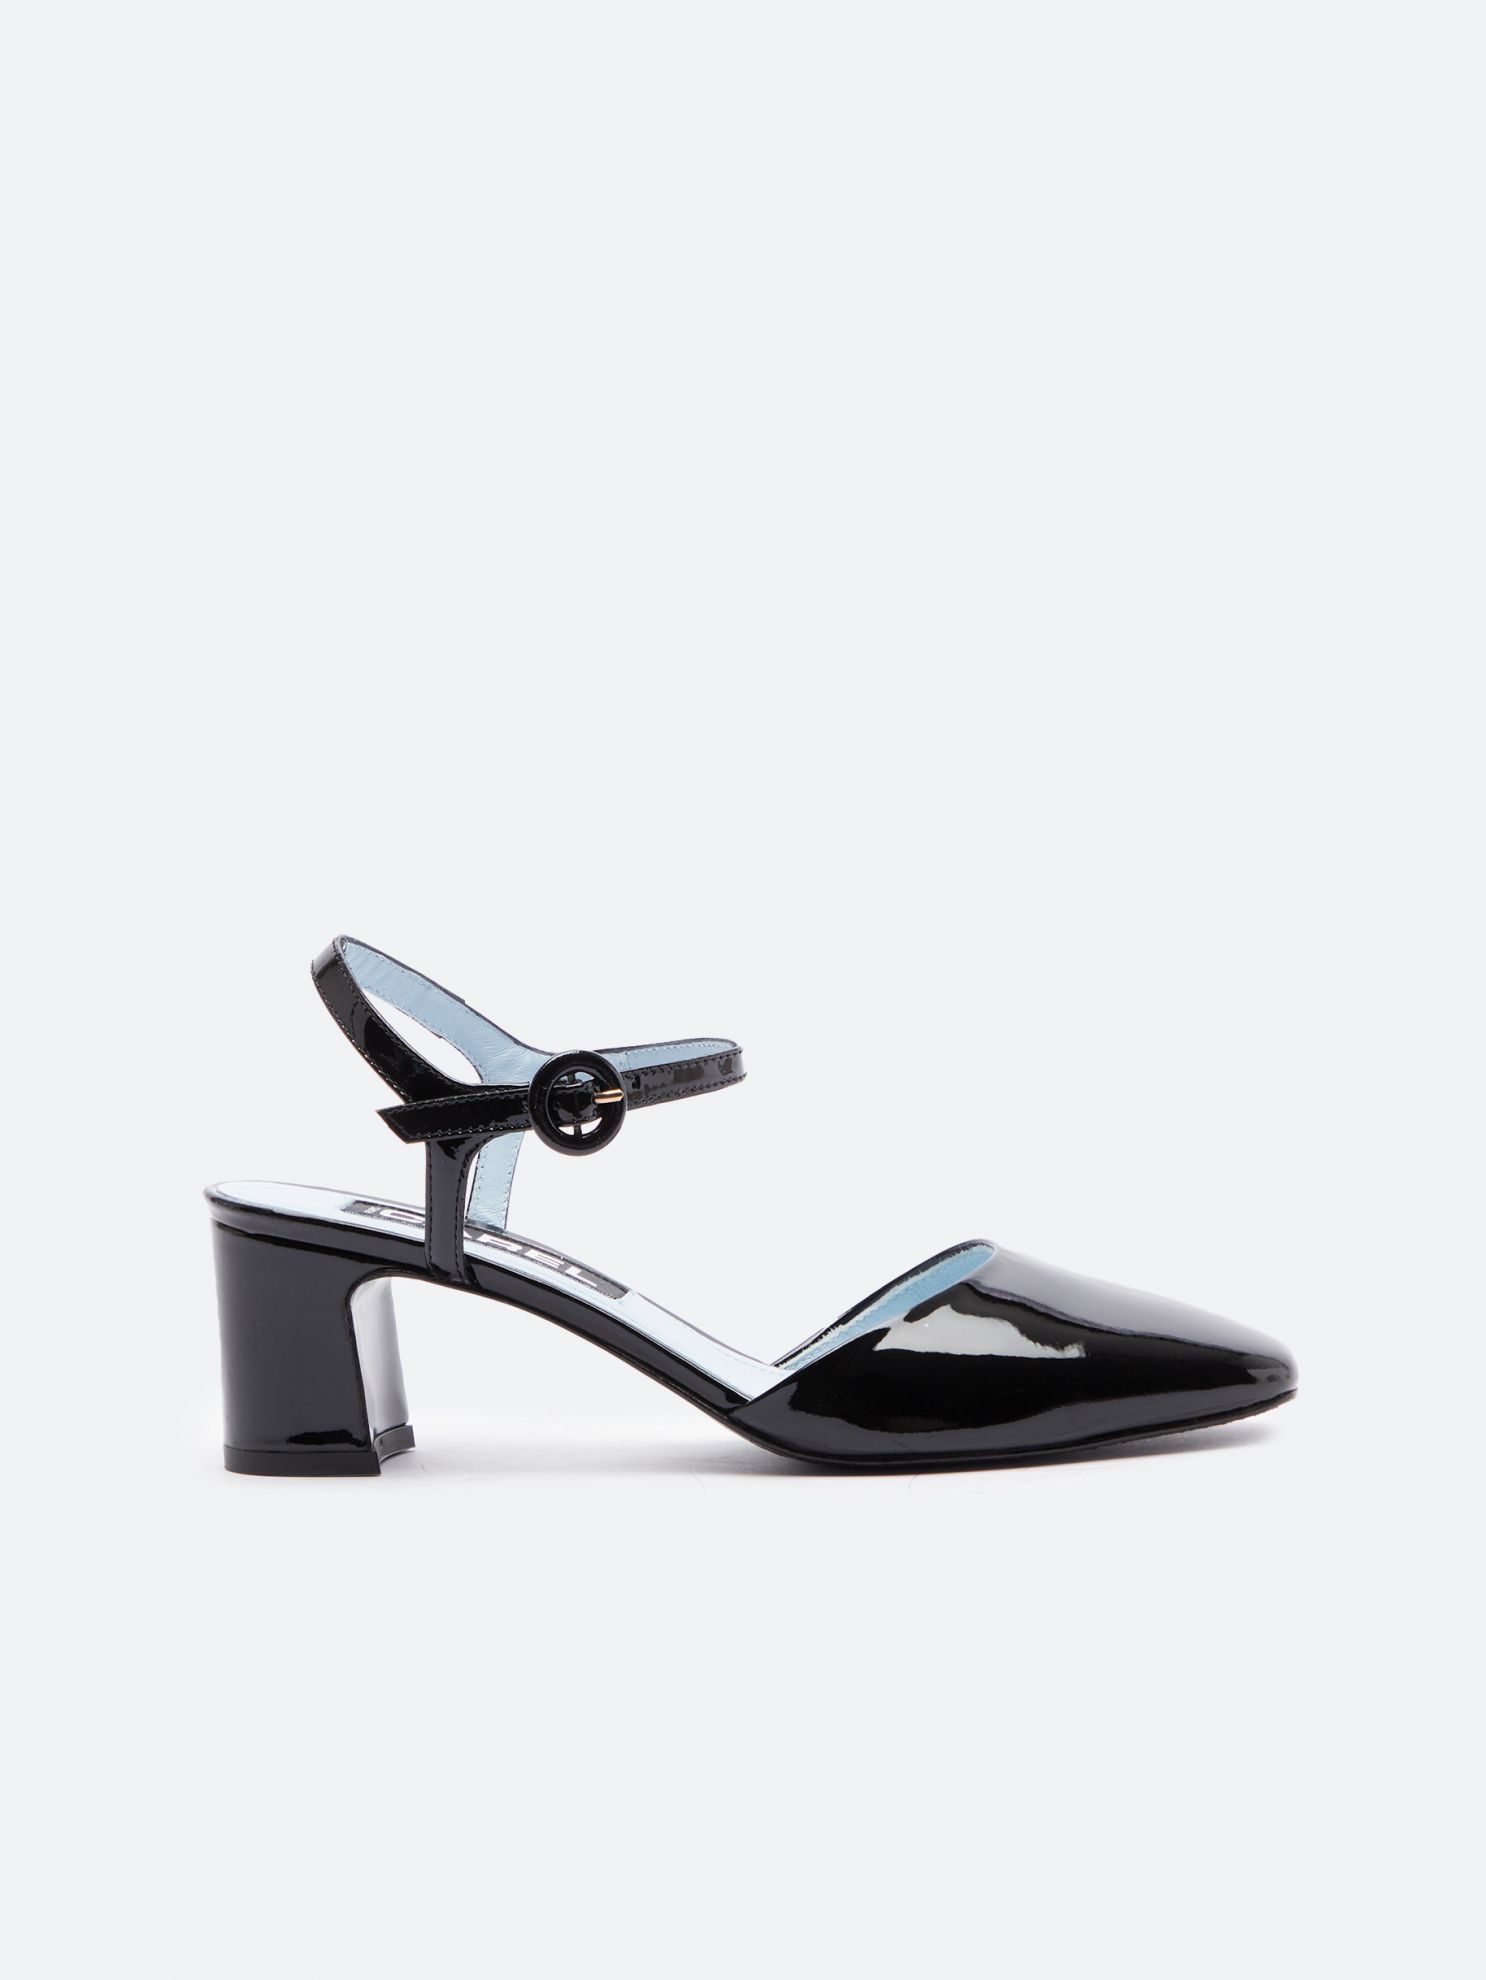 SORAYA black patent leather sandals | Carel Paris Shoes